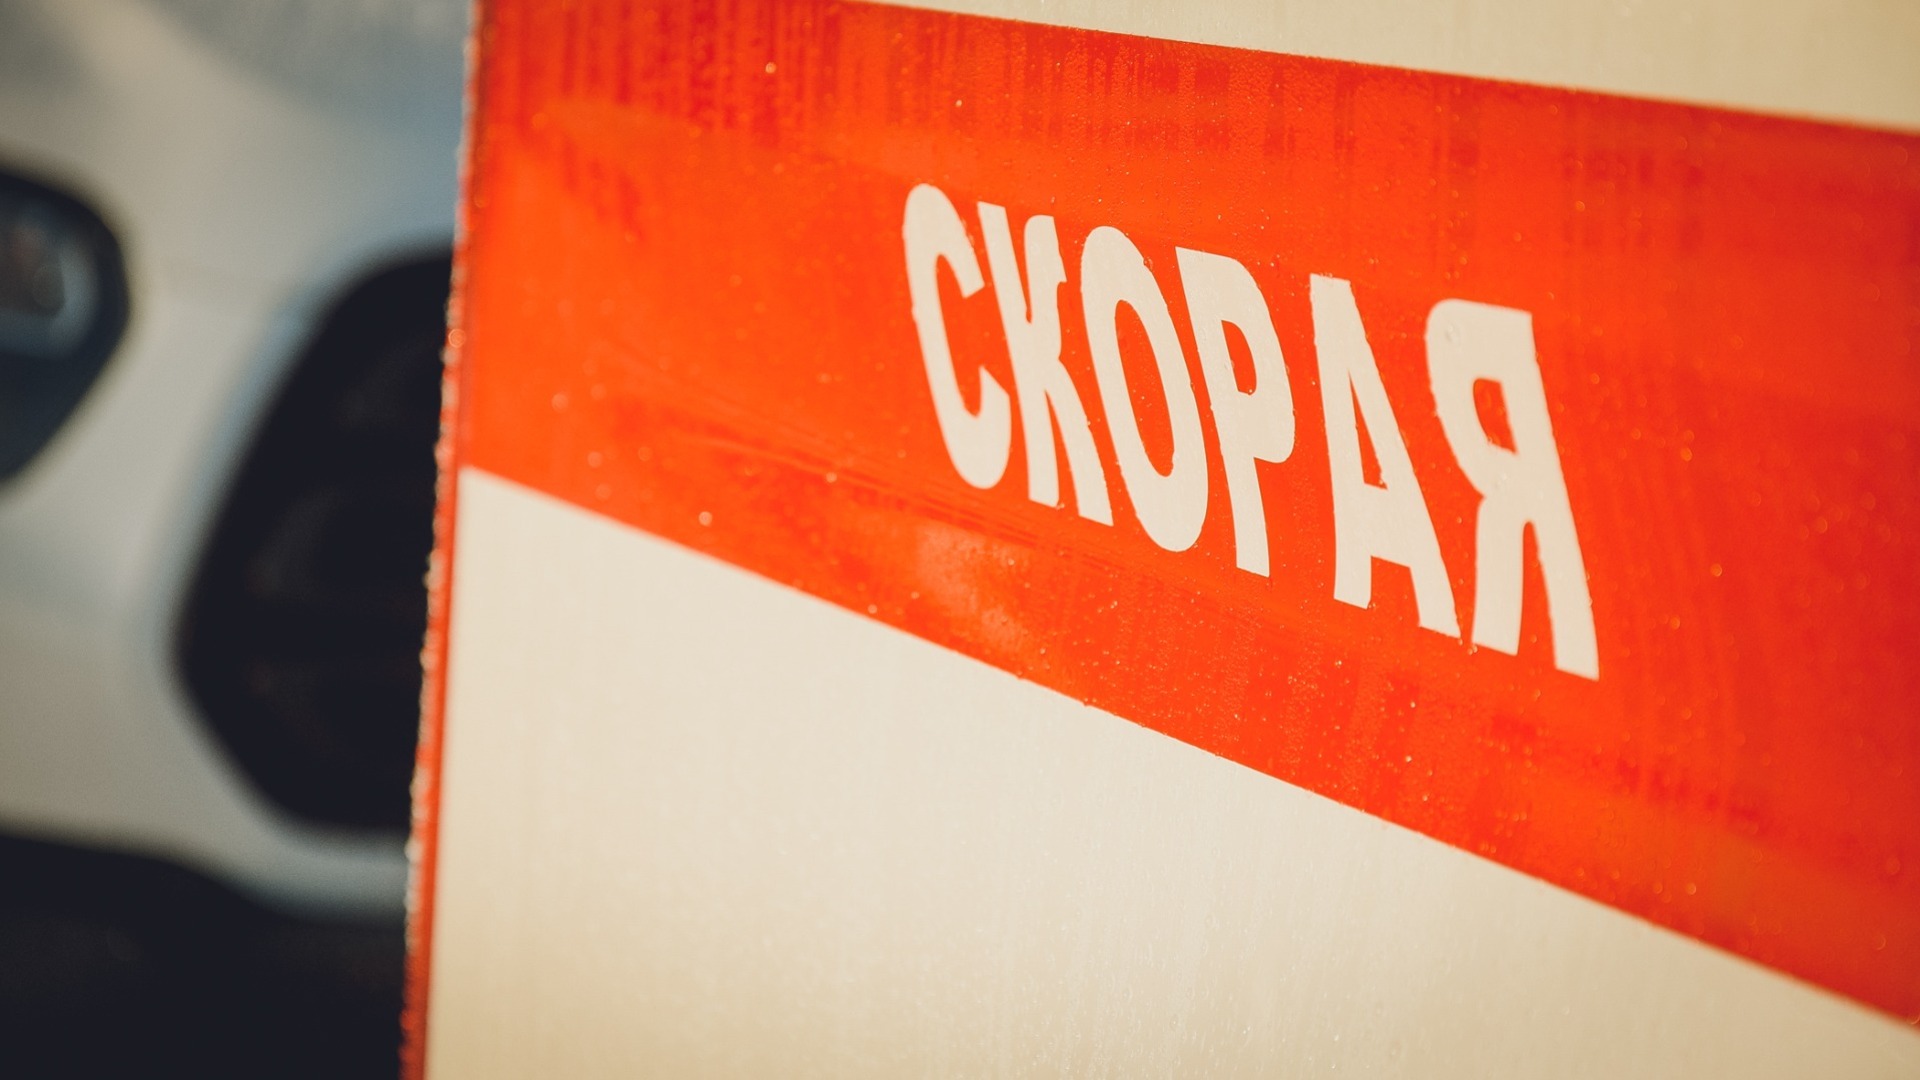 Пешеход погиб под колесами иномарки по дороге в элитный поселок в Волгограде